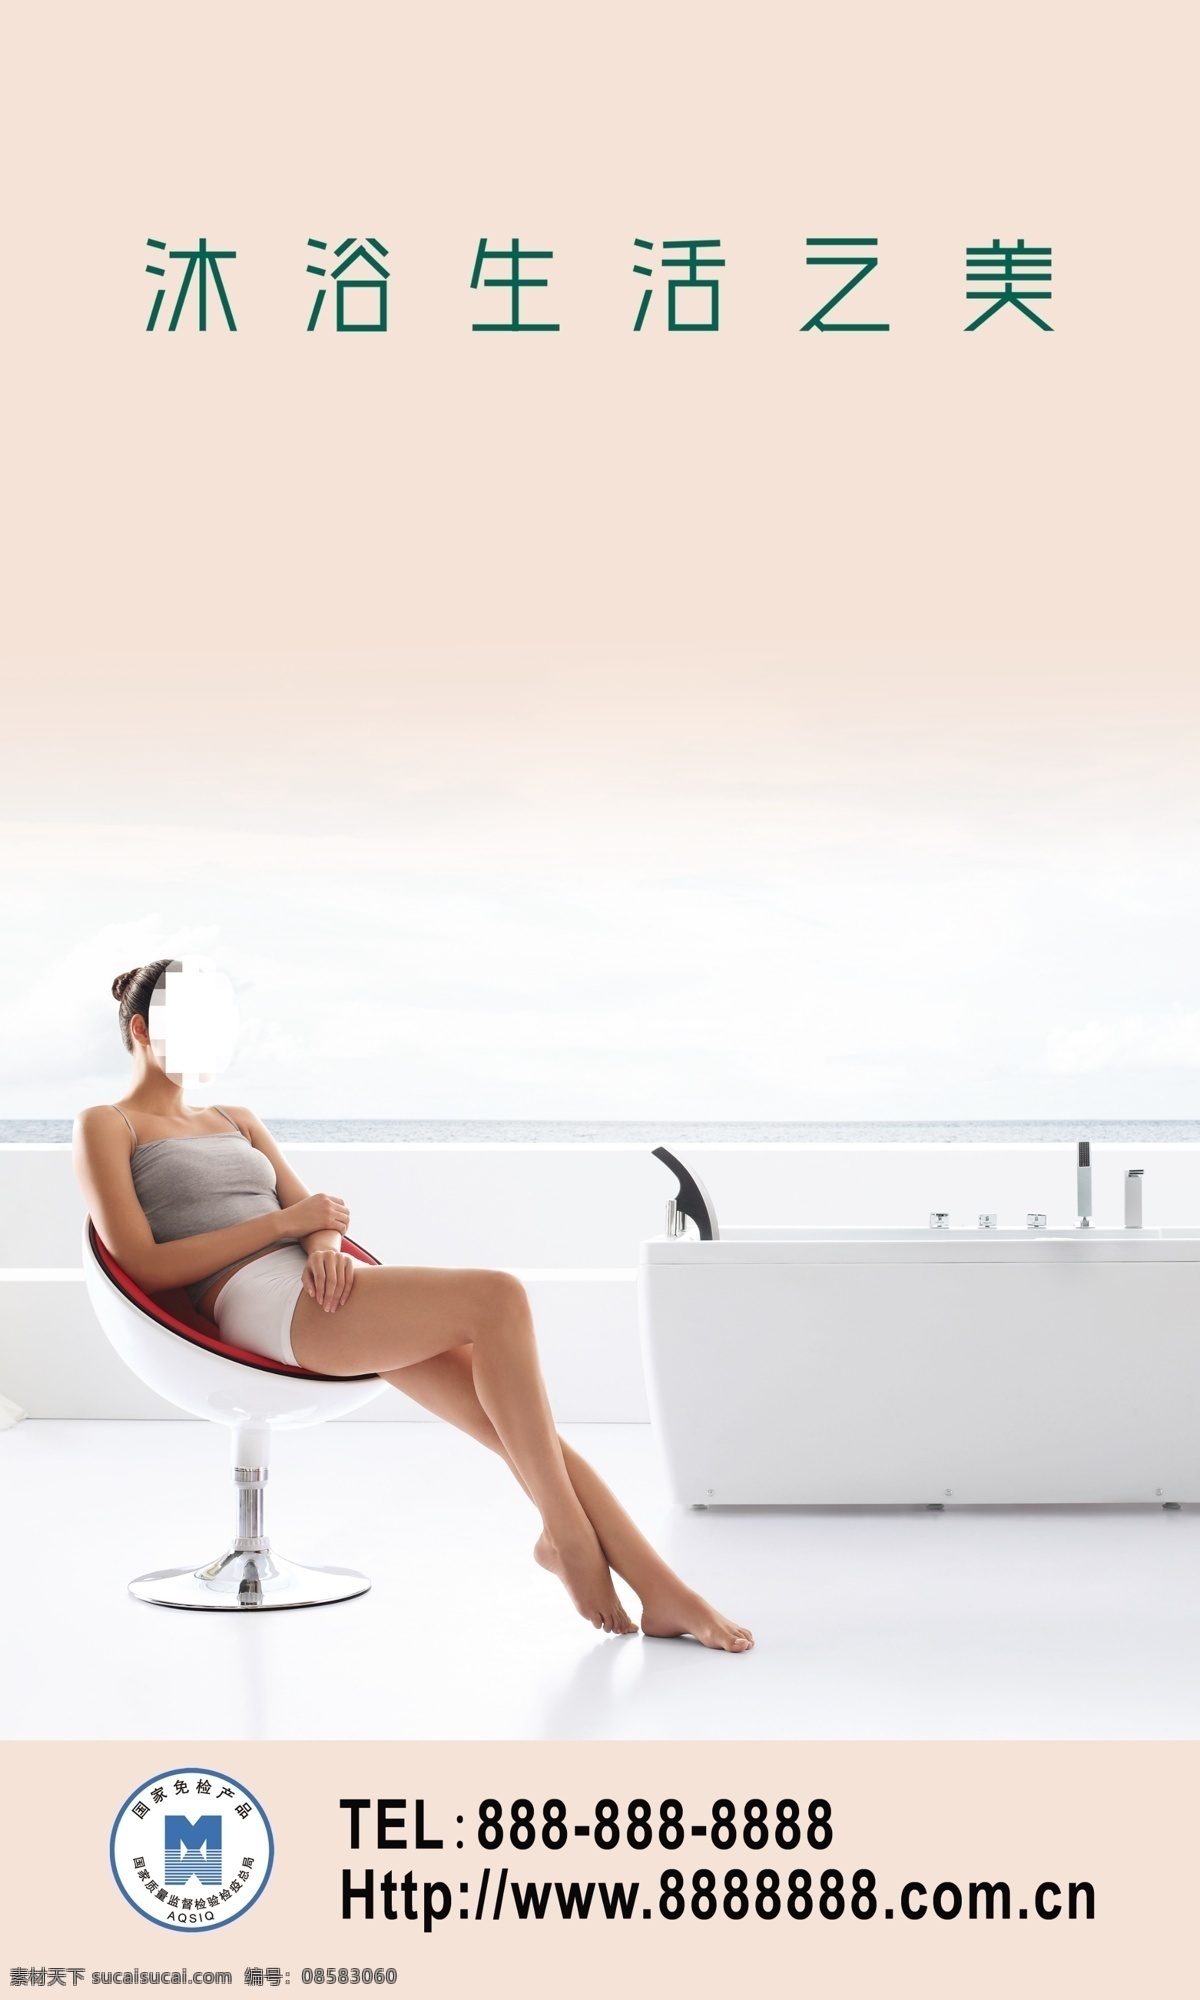 高贵 高雅 广告设计模板 舒适 卫浴 卫浴广告 享受 广告 模板下载 休闲 源文件 其他海报设计